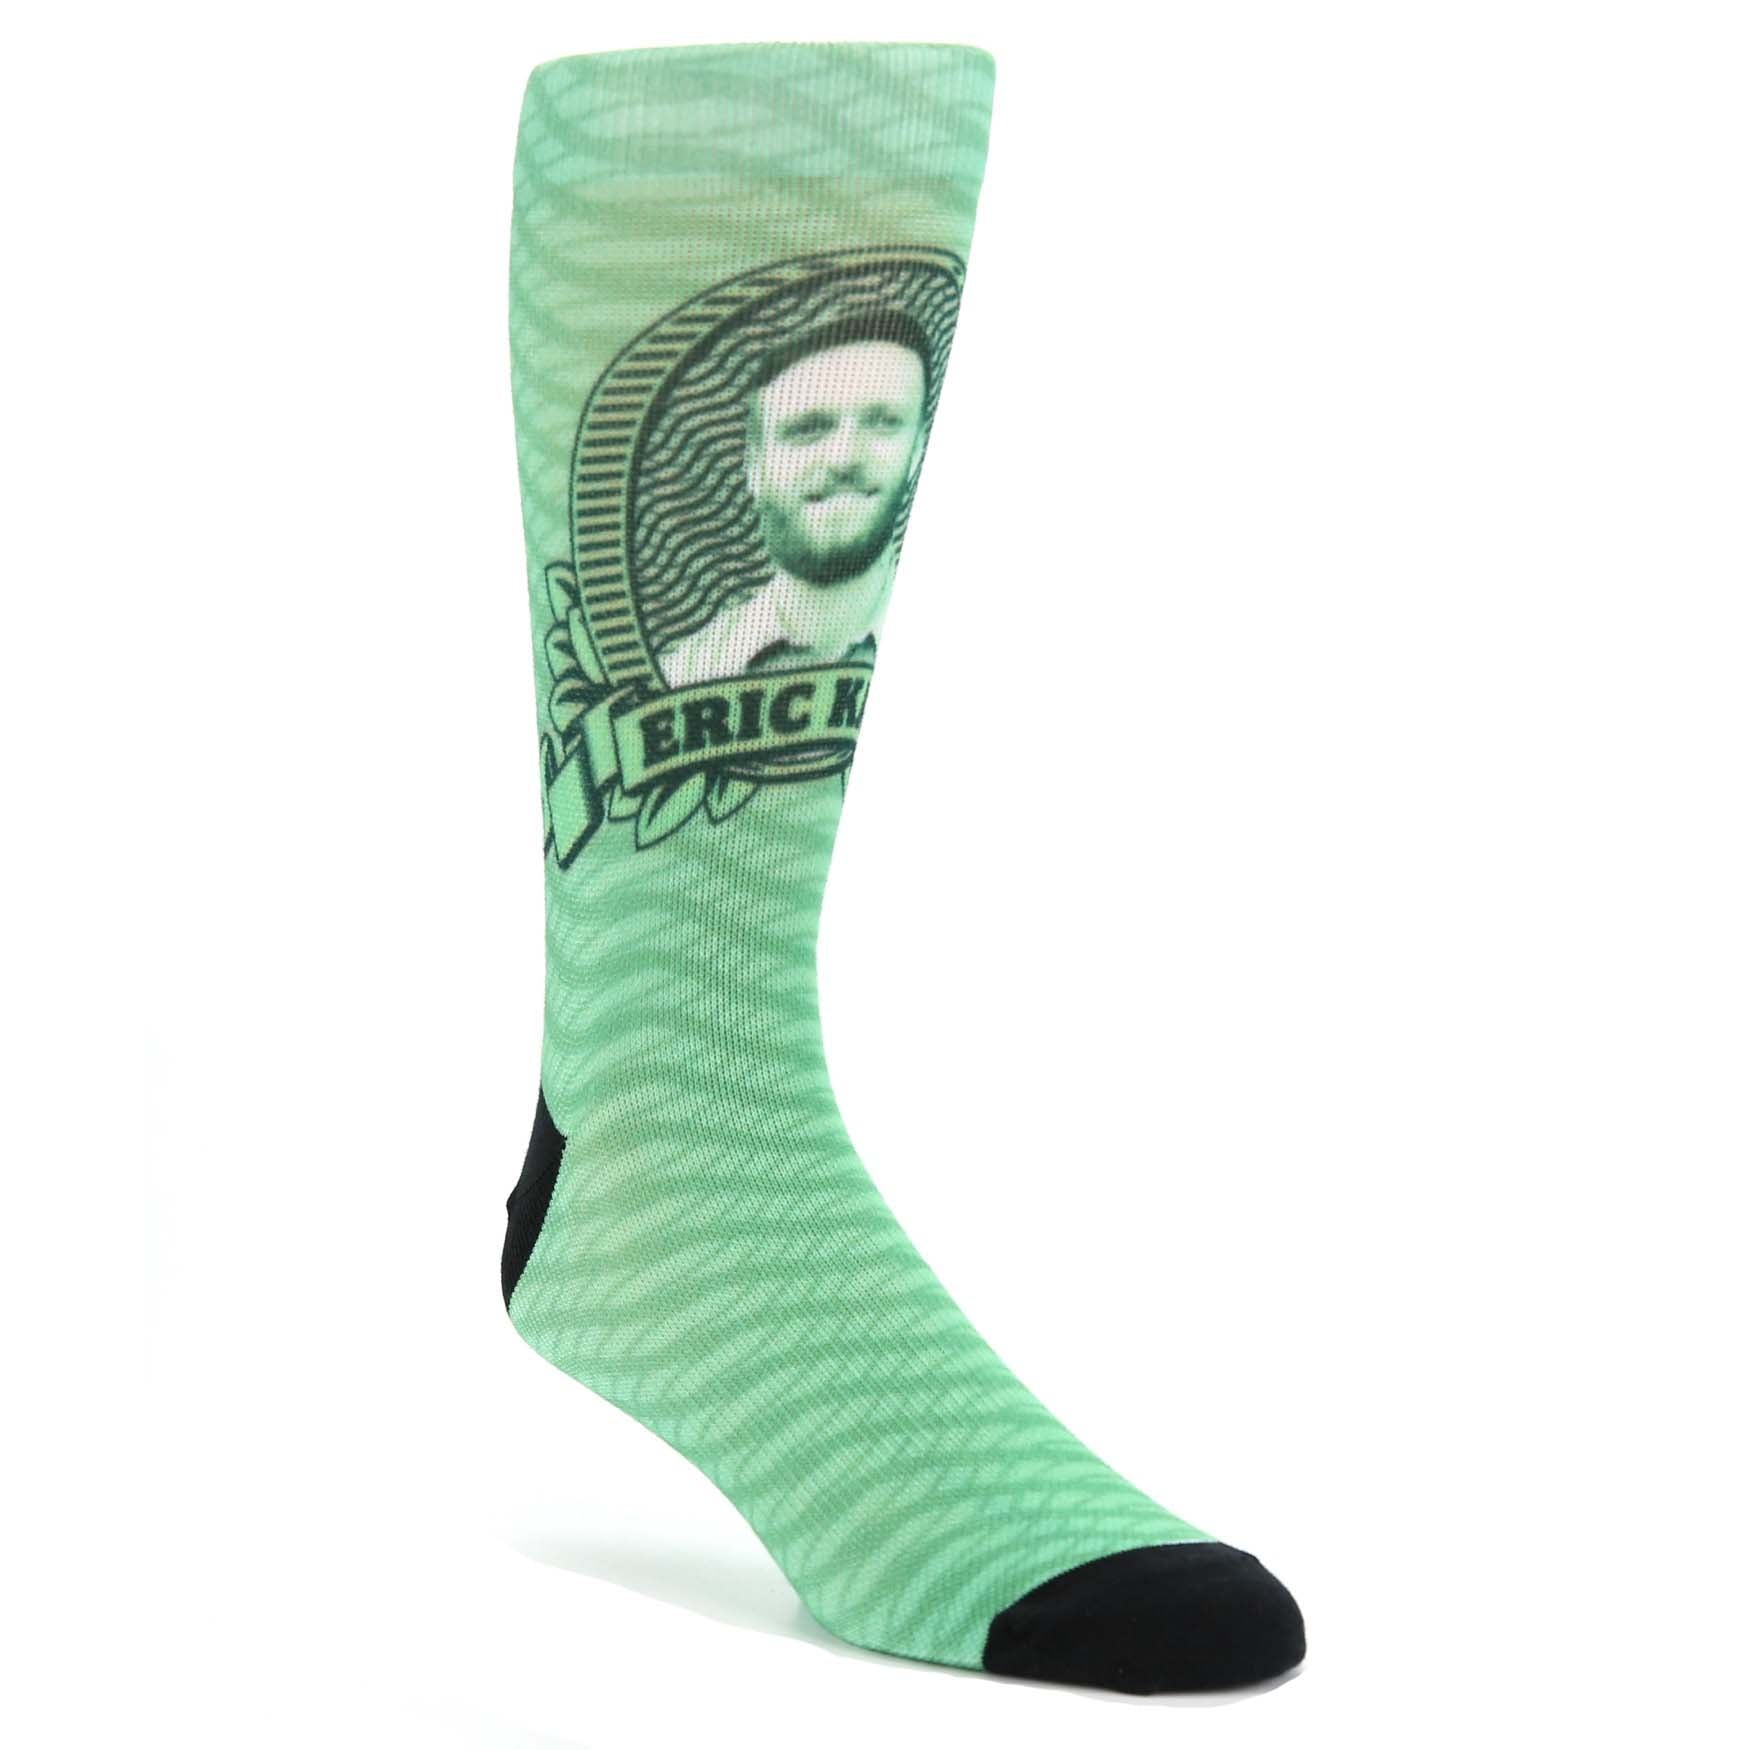 Money Custom Face Socks - Men's Custom Socks